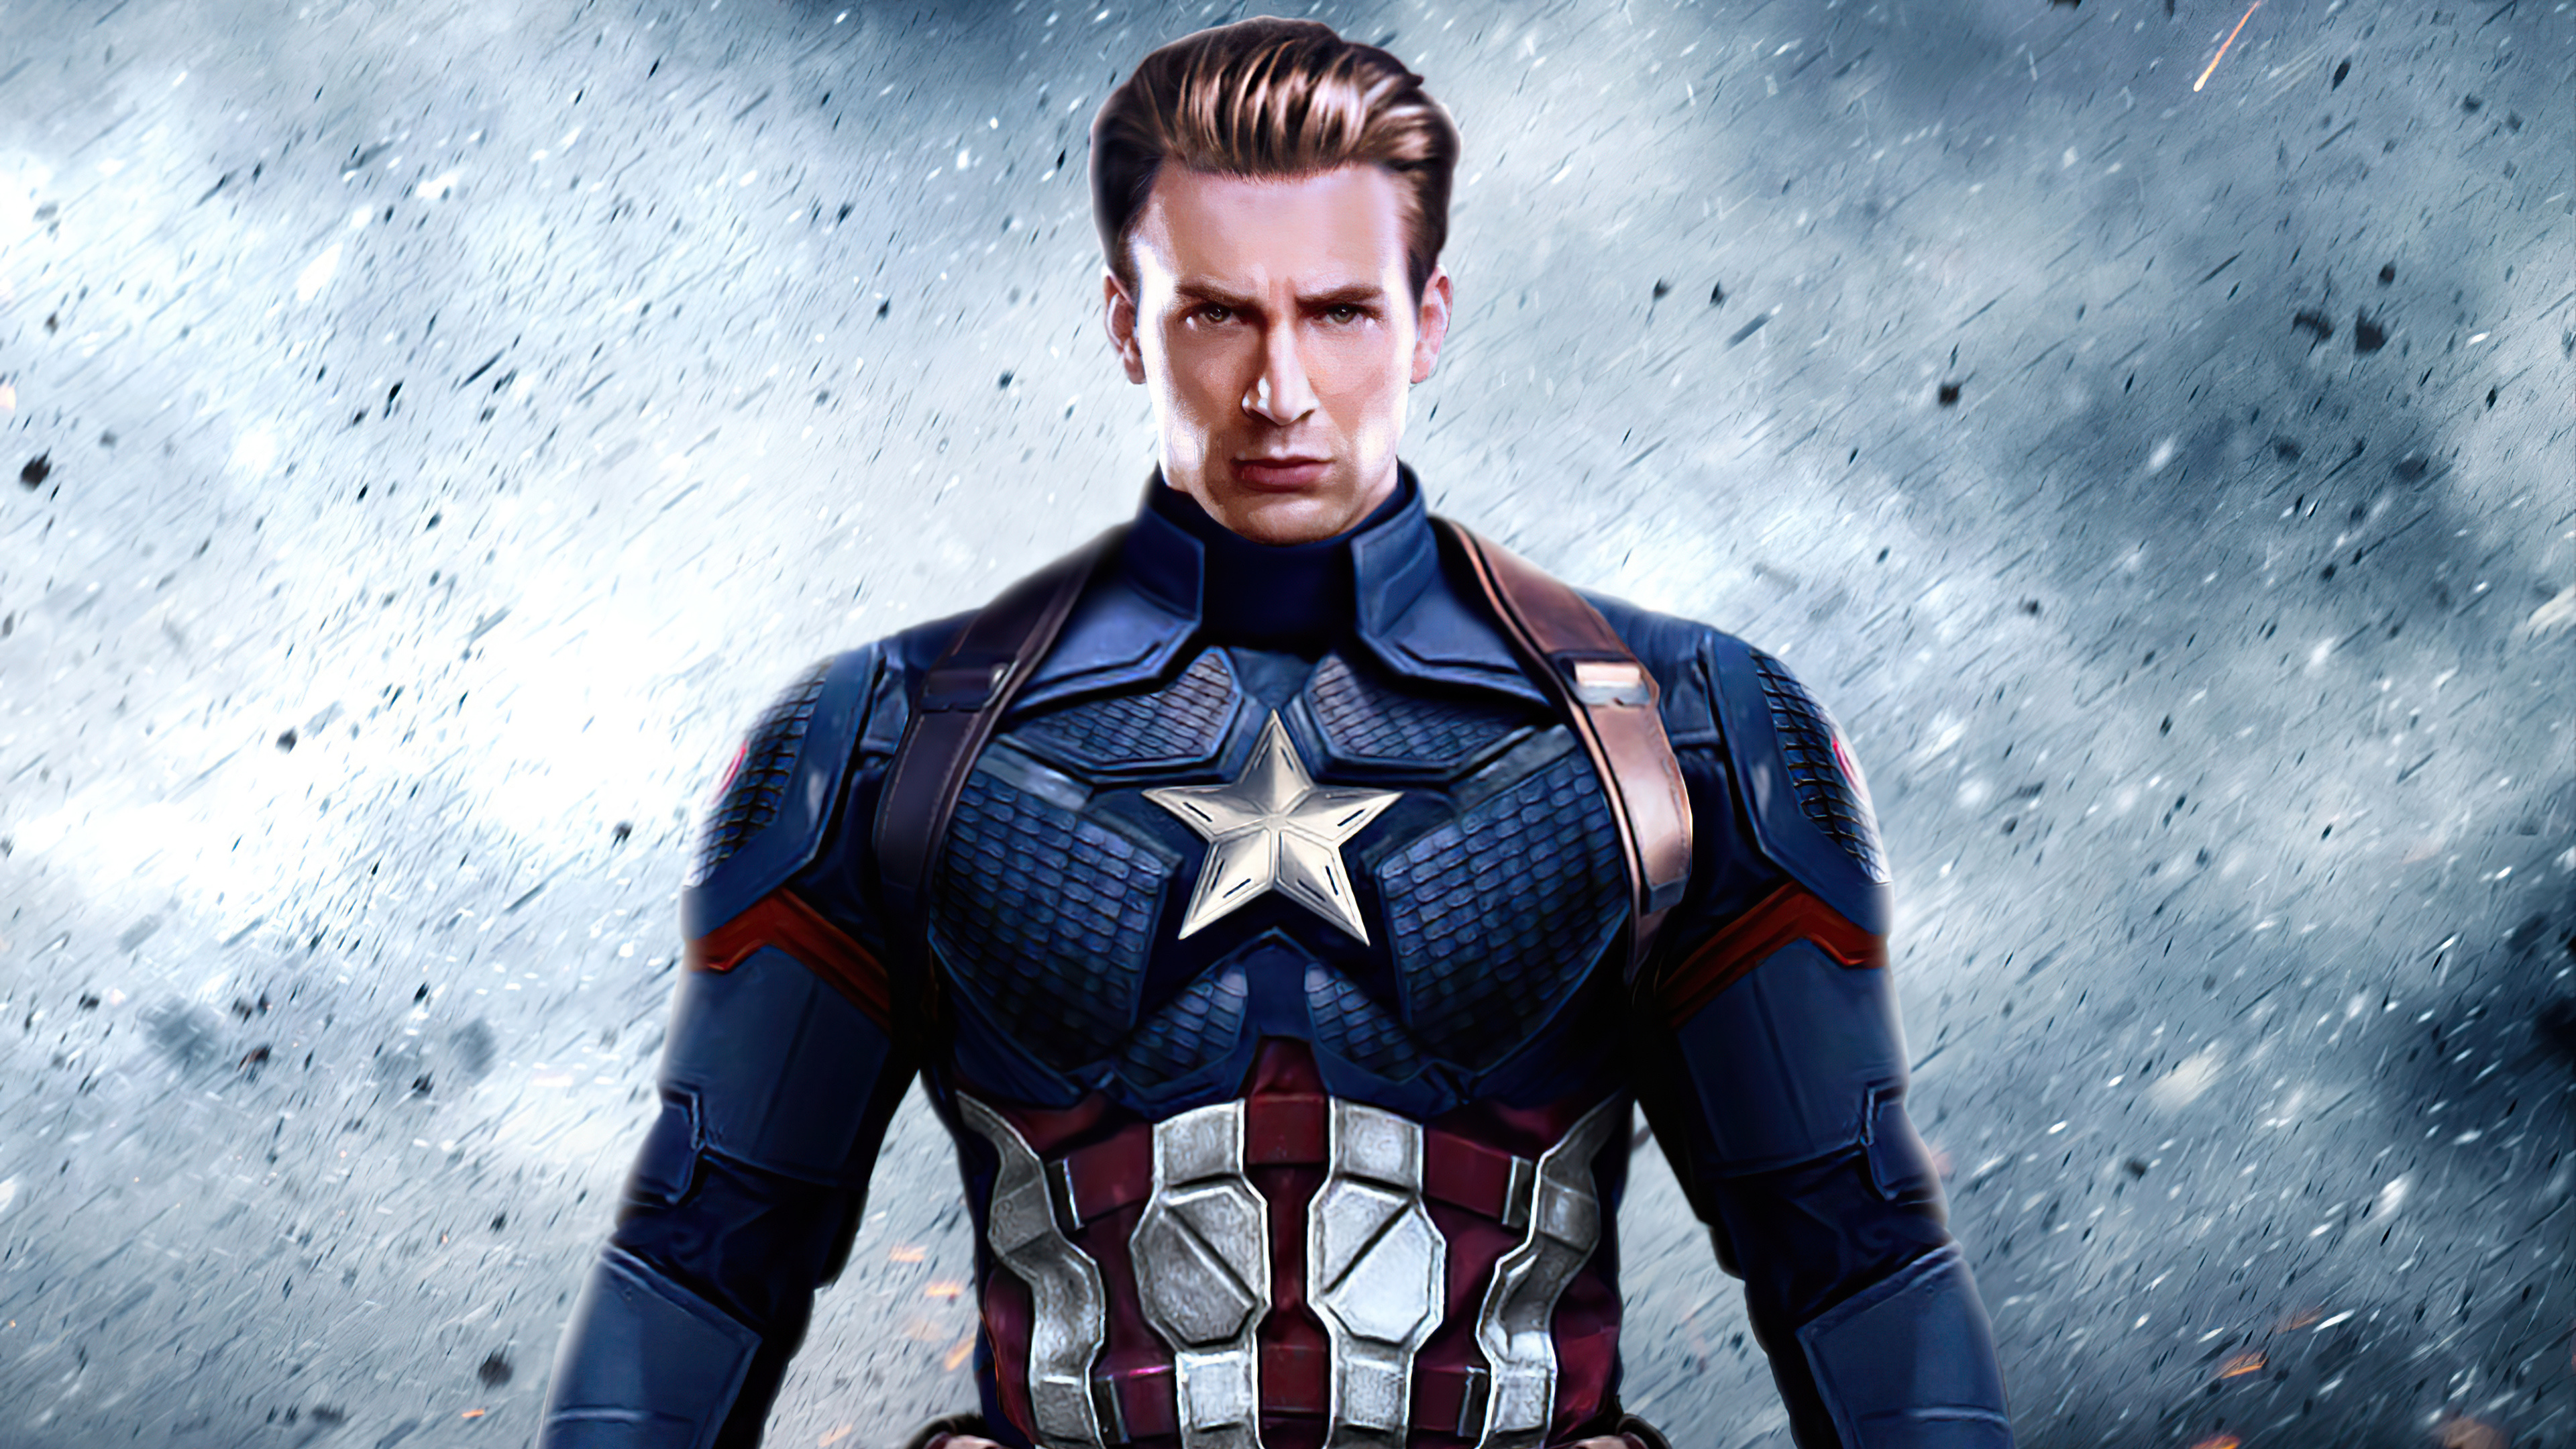 Captain America: Avengers, Chris Evans as Steve Rogers, Superheroes. 3840x2160 4K Wallpaper.